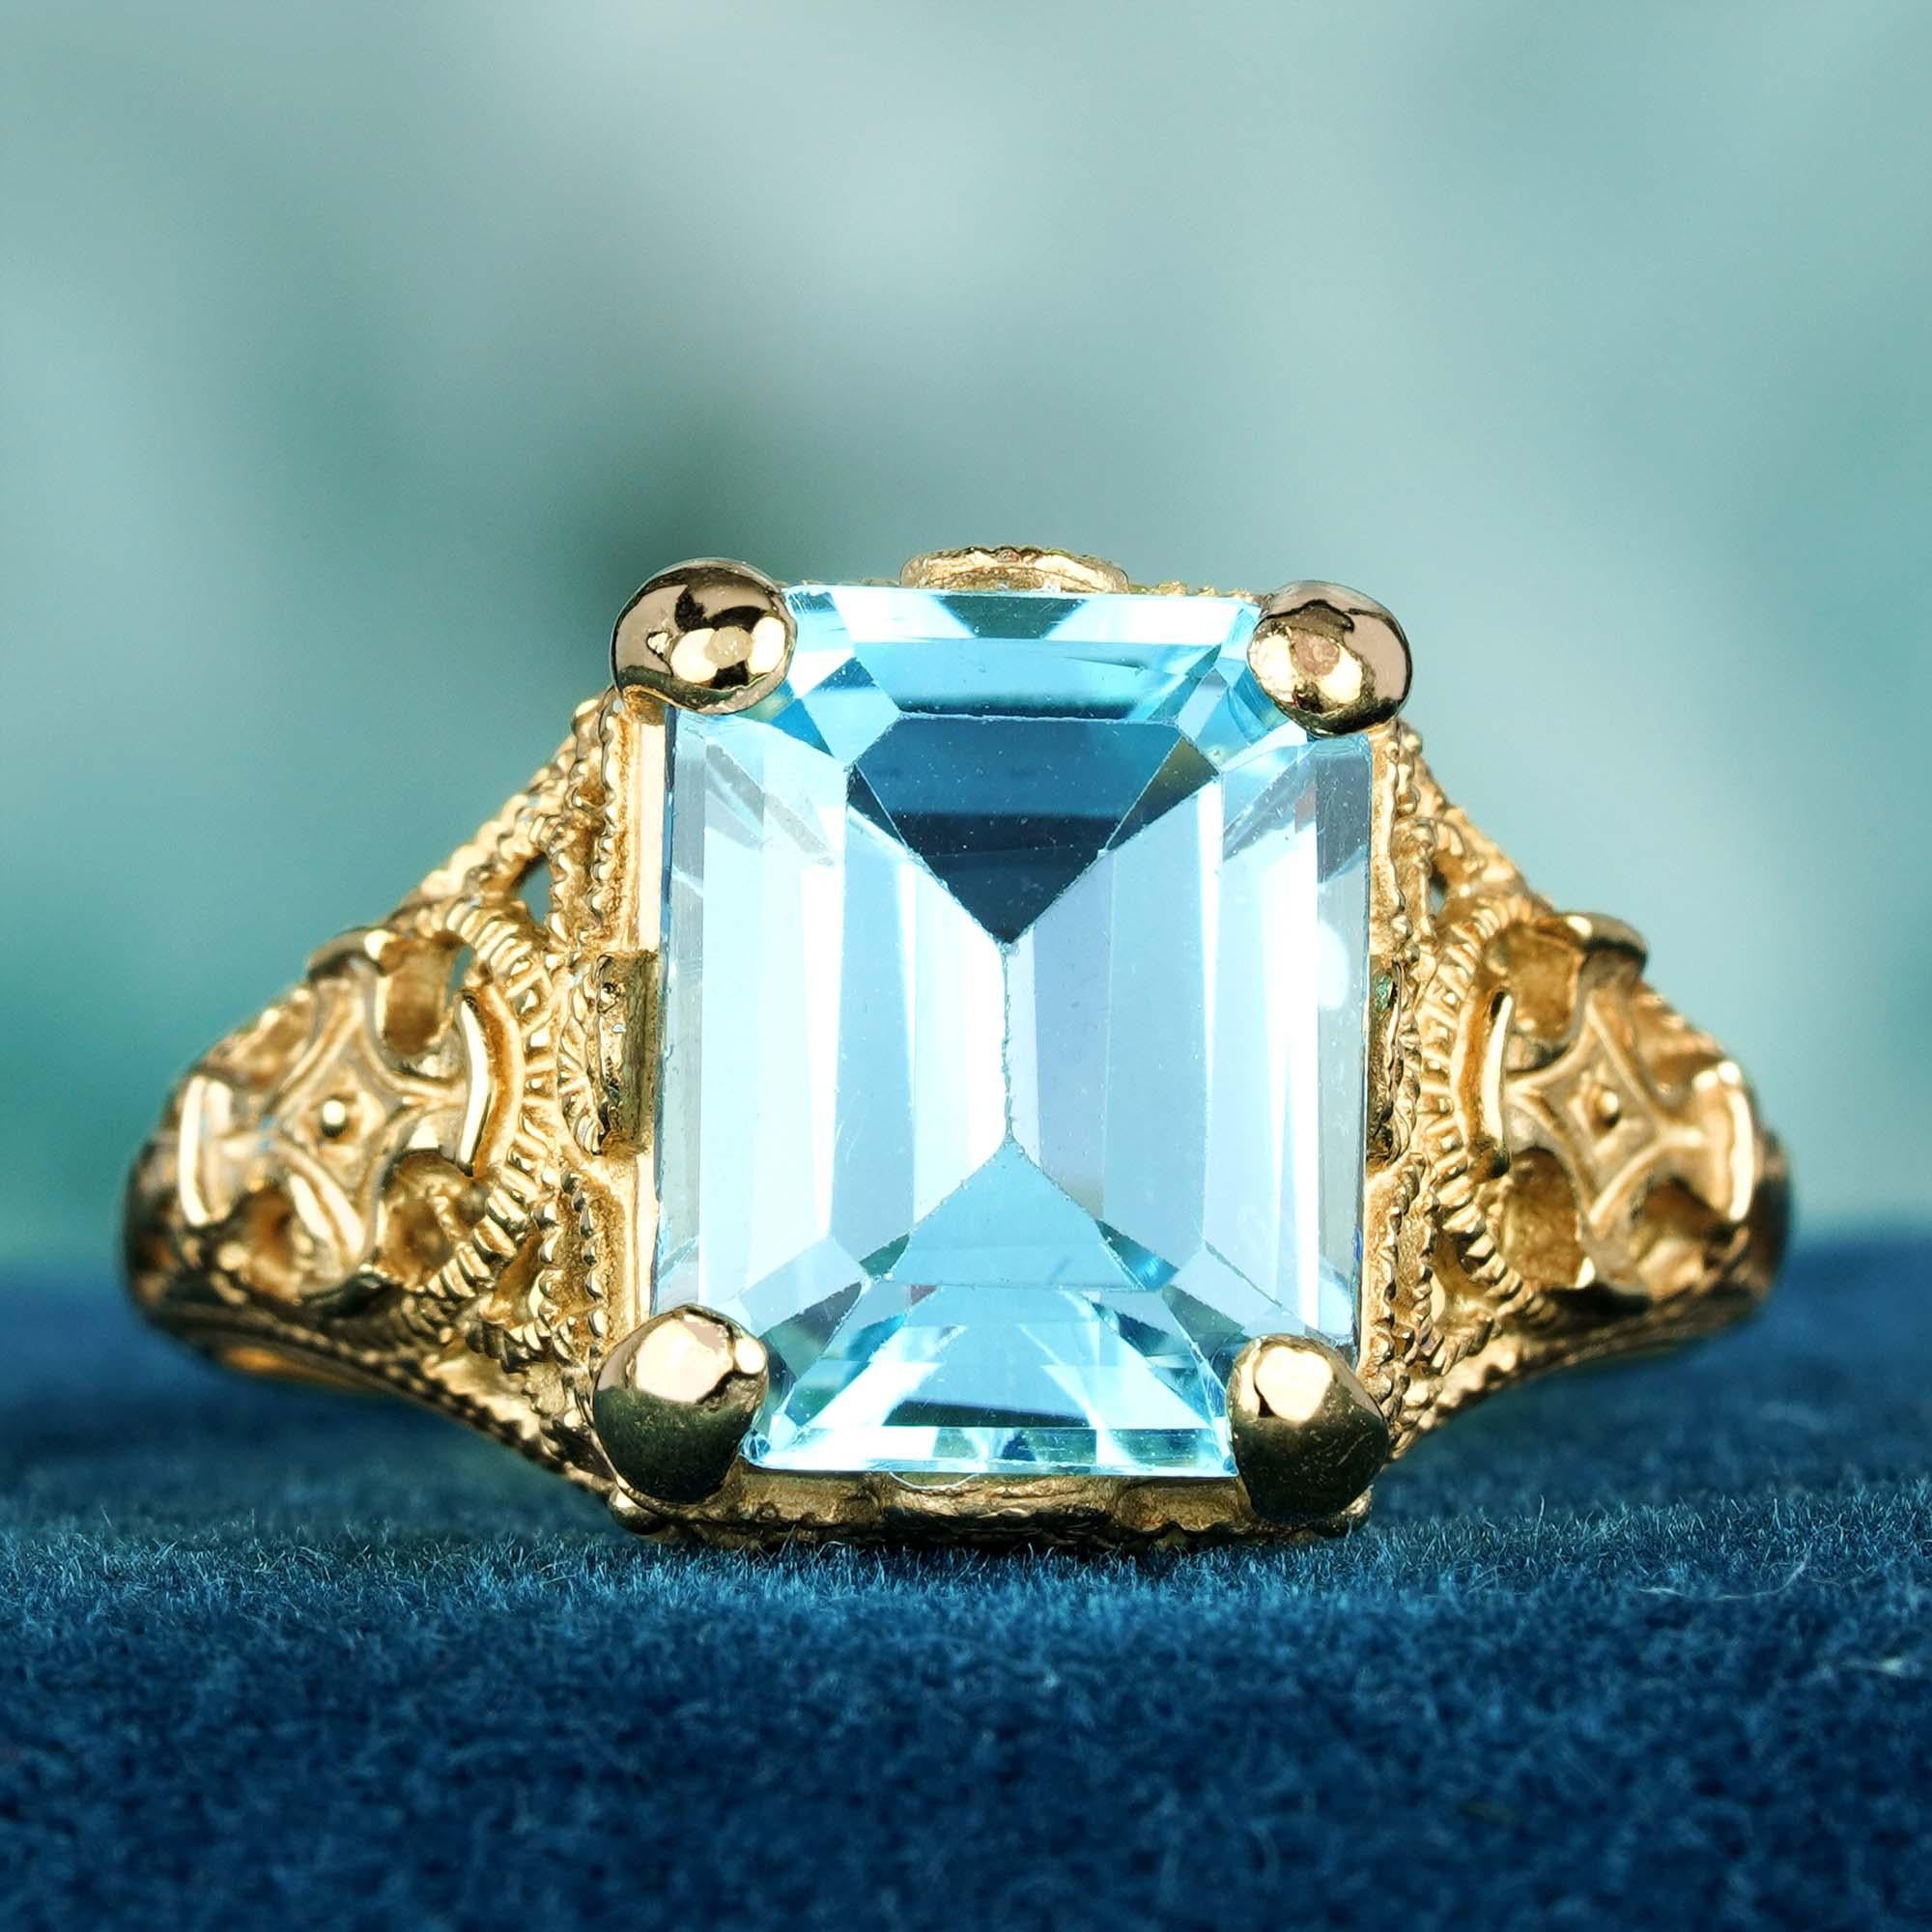 En vente :  Nature Emerald Cut Blue Topaz Vintage Style Filigree Ring in Solid 9K Gold (Bague filigranée en or massif 9K)  3